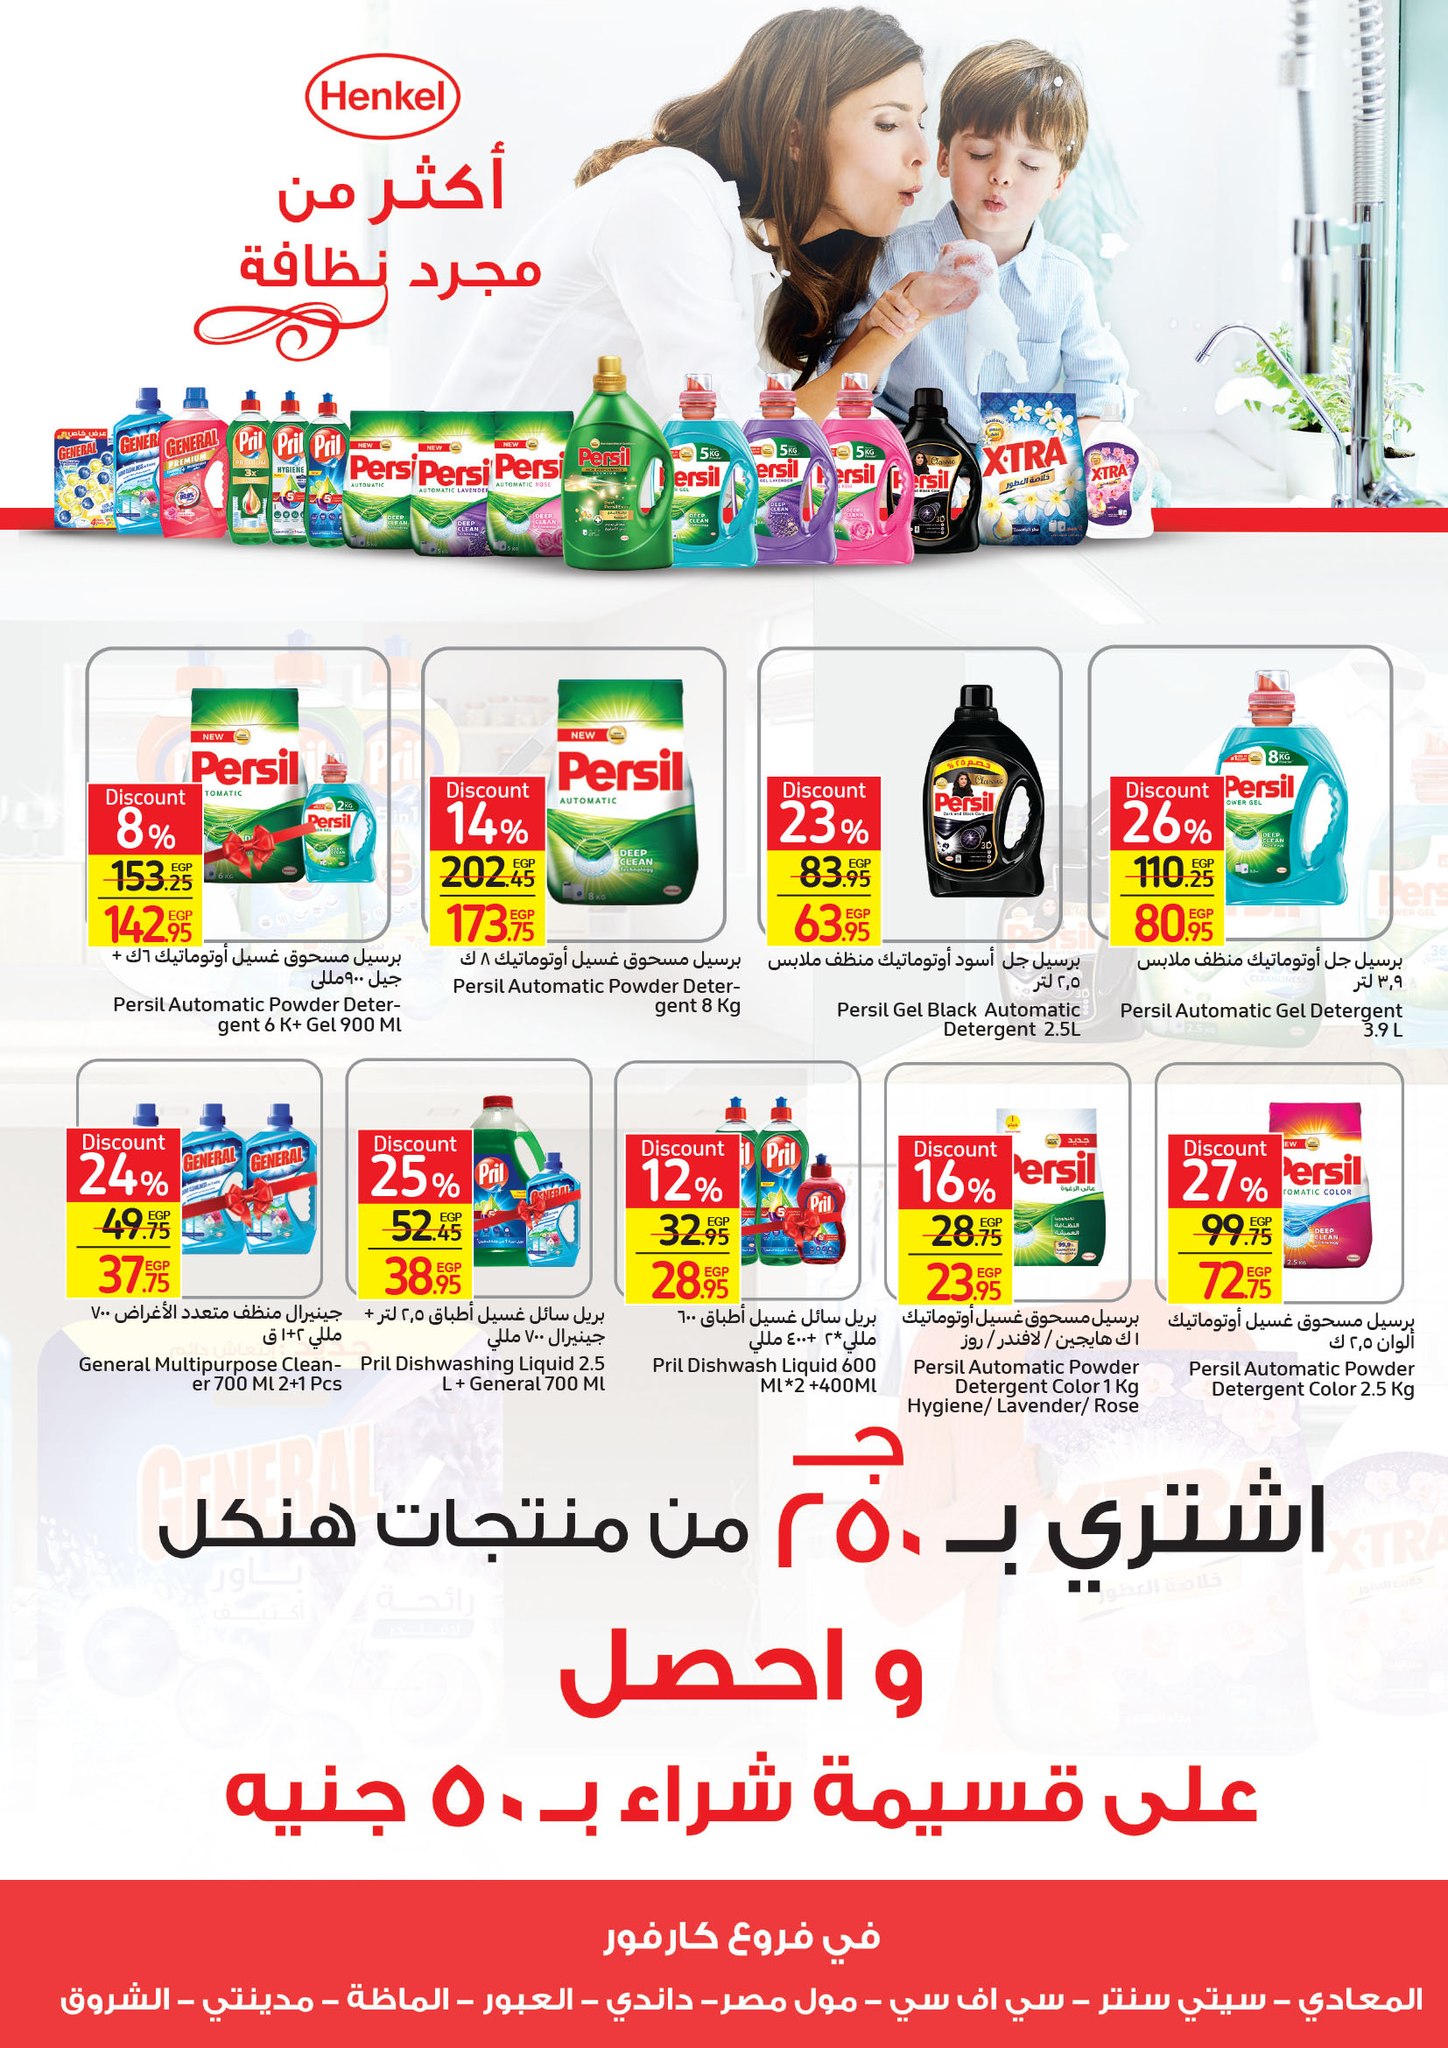 Carrefour Egypt أحدث عروض كارفور للجمعة البيضاء شهر نوفمبر بخصومات تصل 50% 39